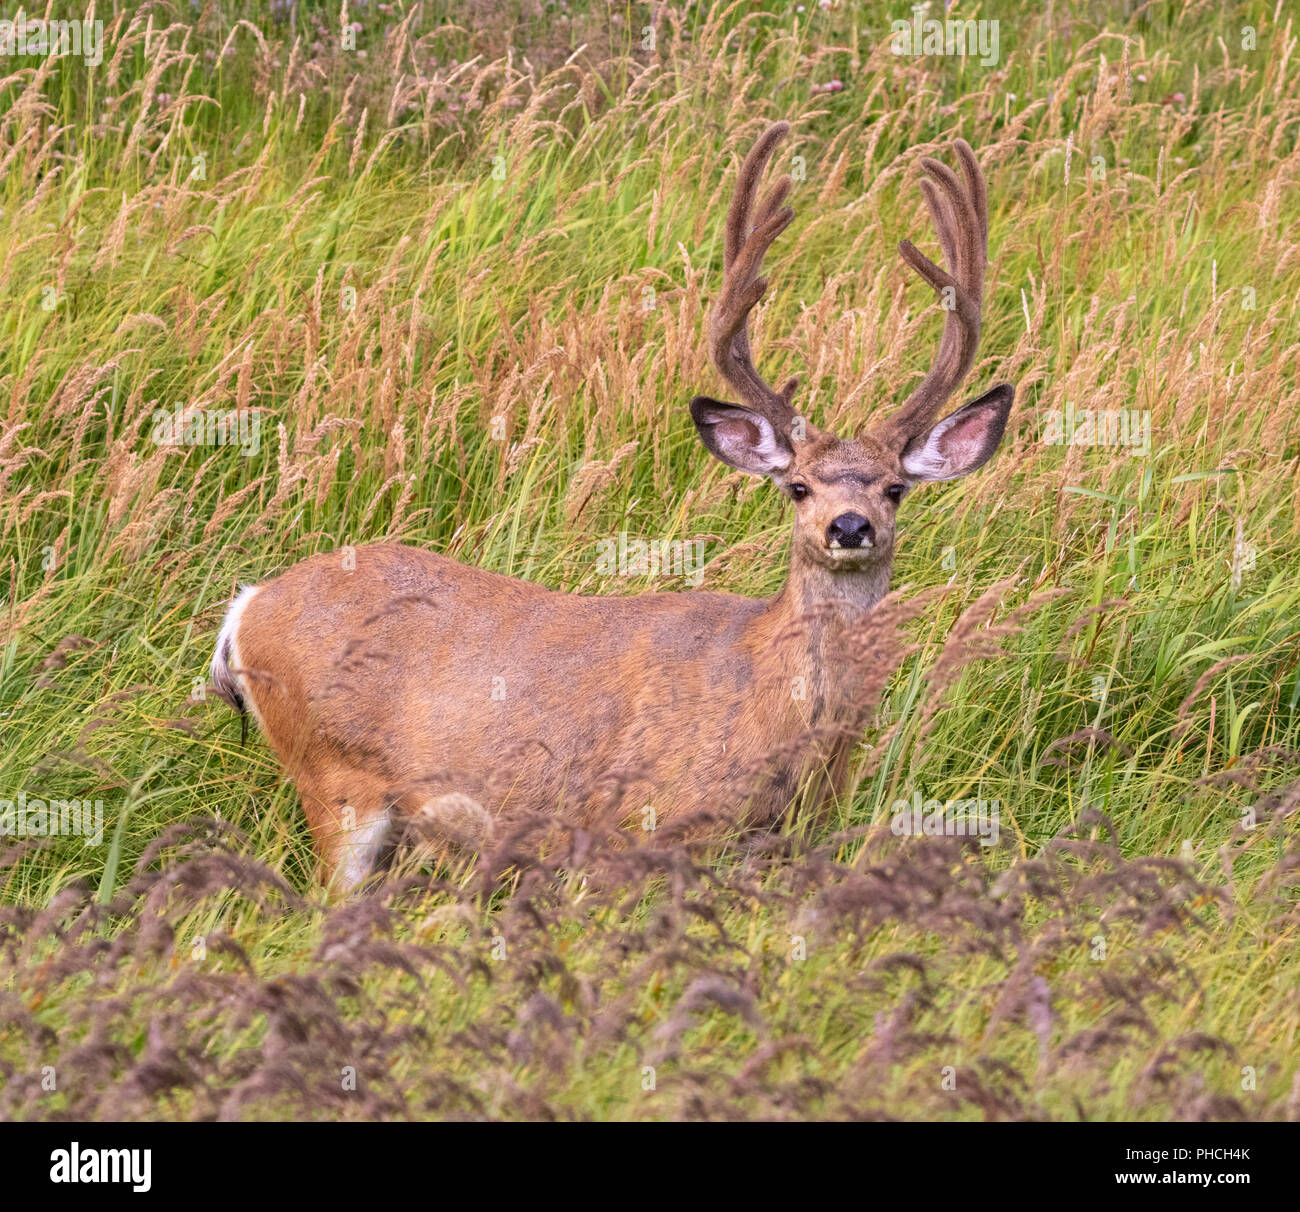 Mule deer (Odocoileus hemionus) male grazing in high grass, Yellowstone National Park, Wyoming, USA Stock Photo